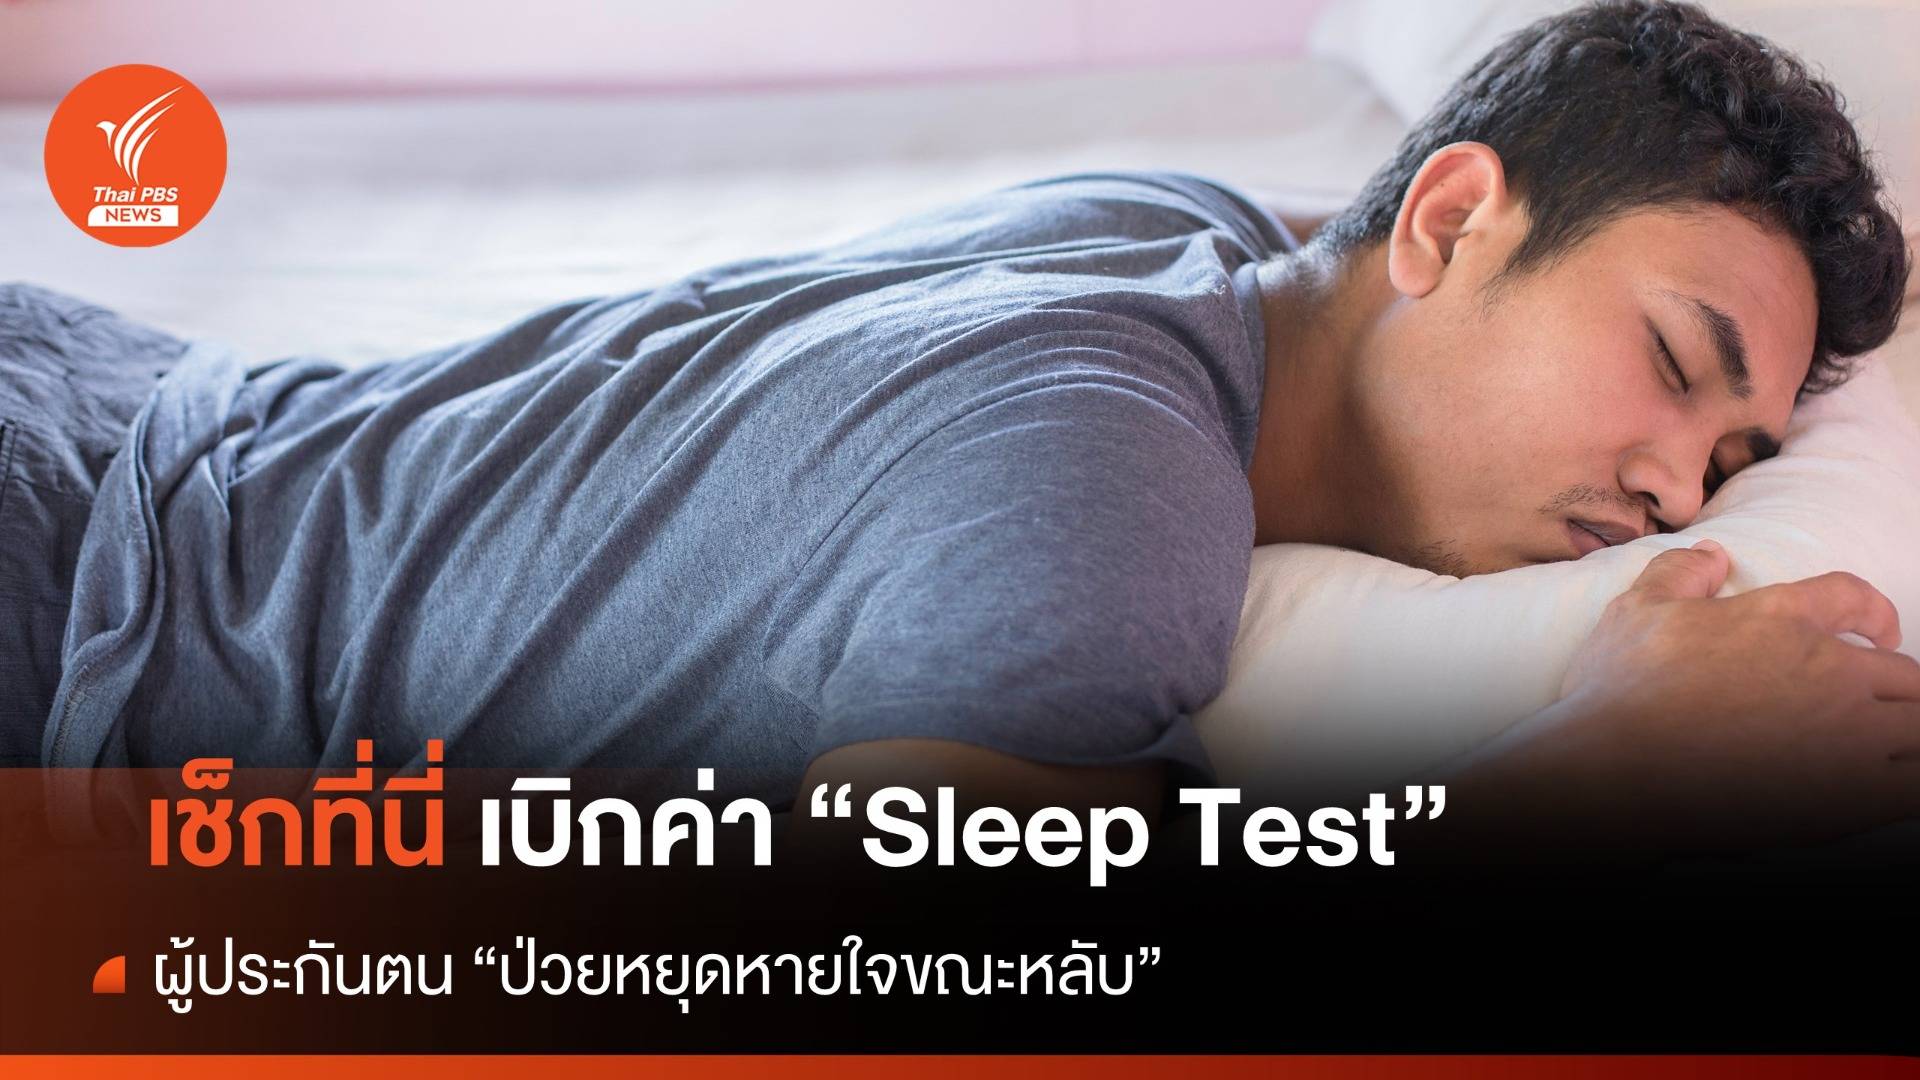 เช็กที่นี่ เบิกค่า "Sleep Test" ผู้ประกันตน "ป่วยหยุดหายใจขณะหลับ" 